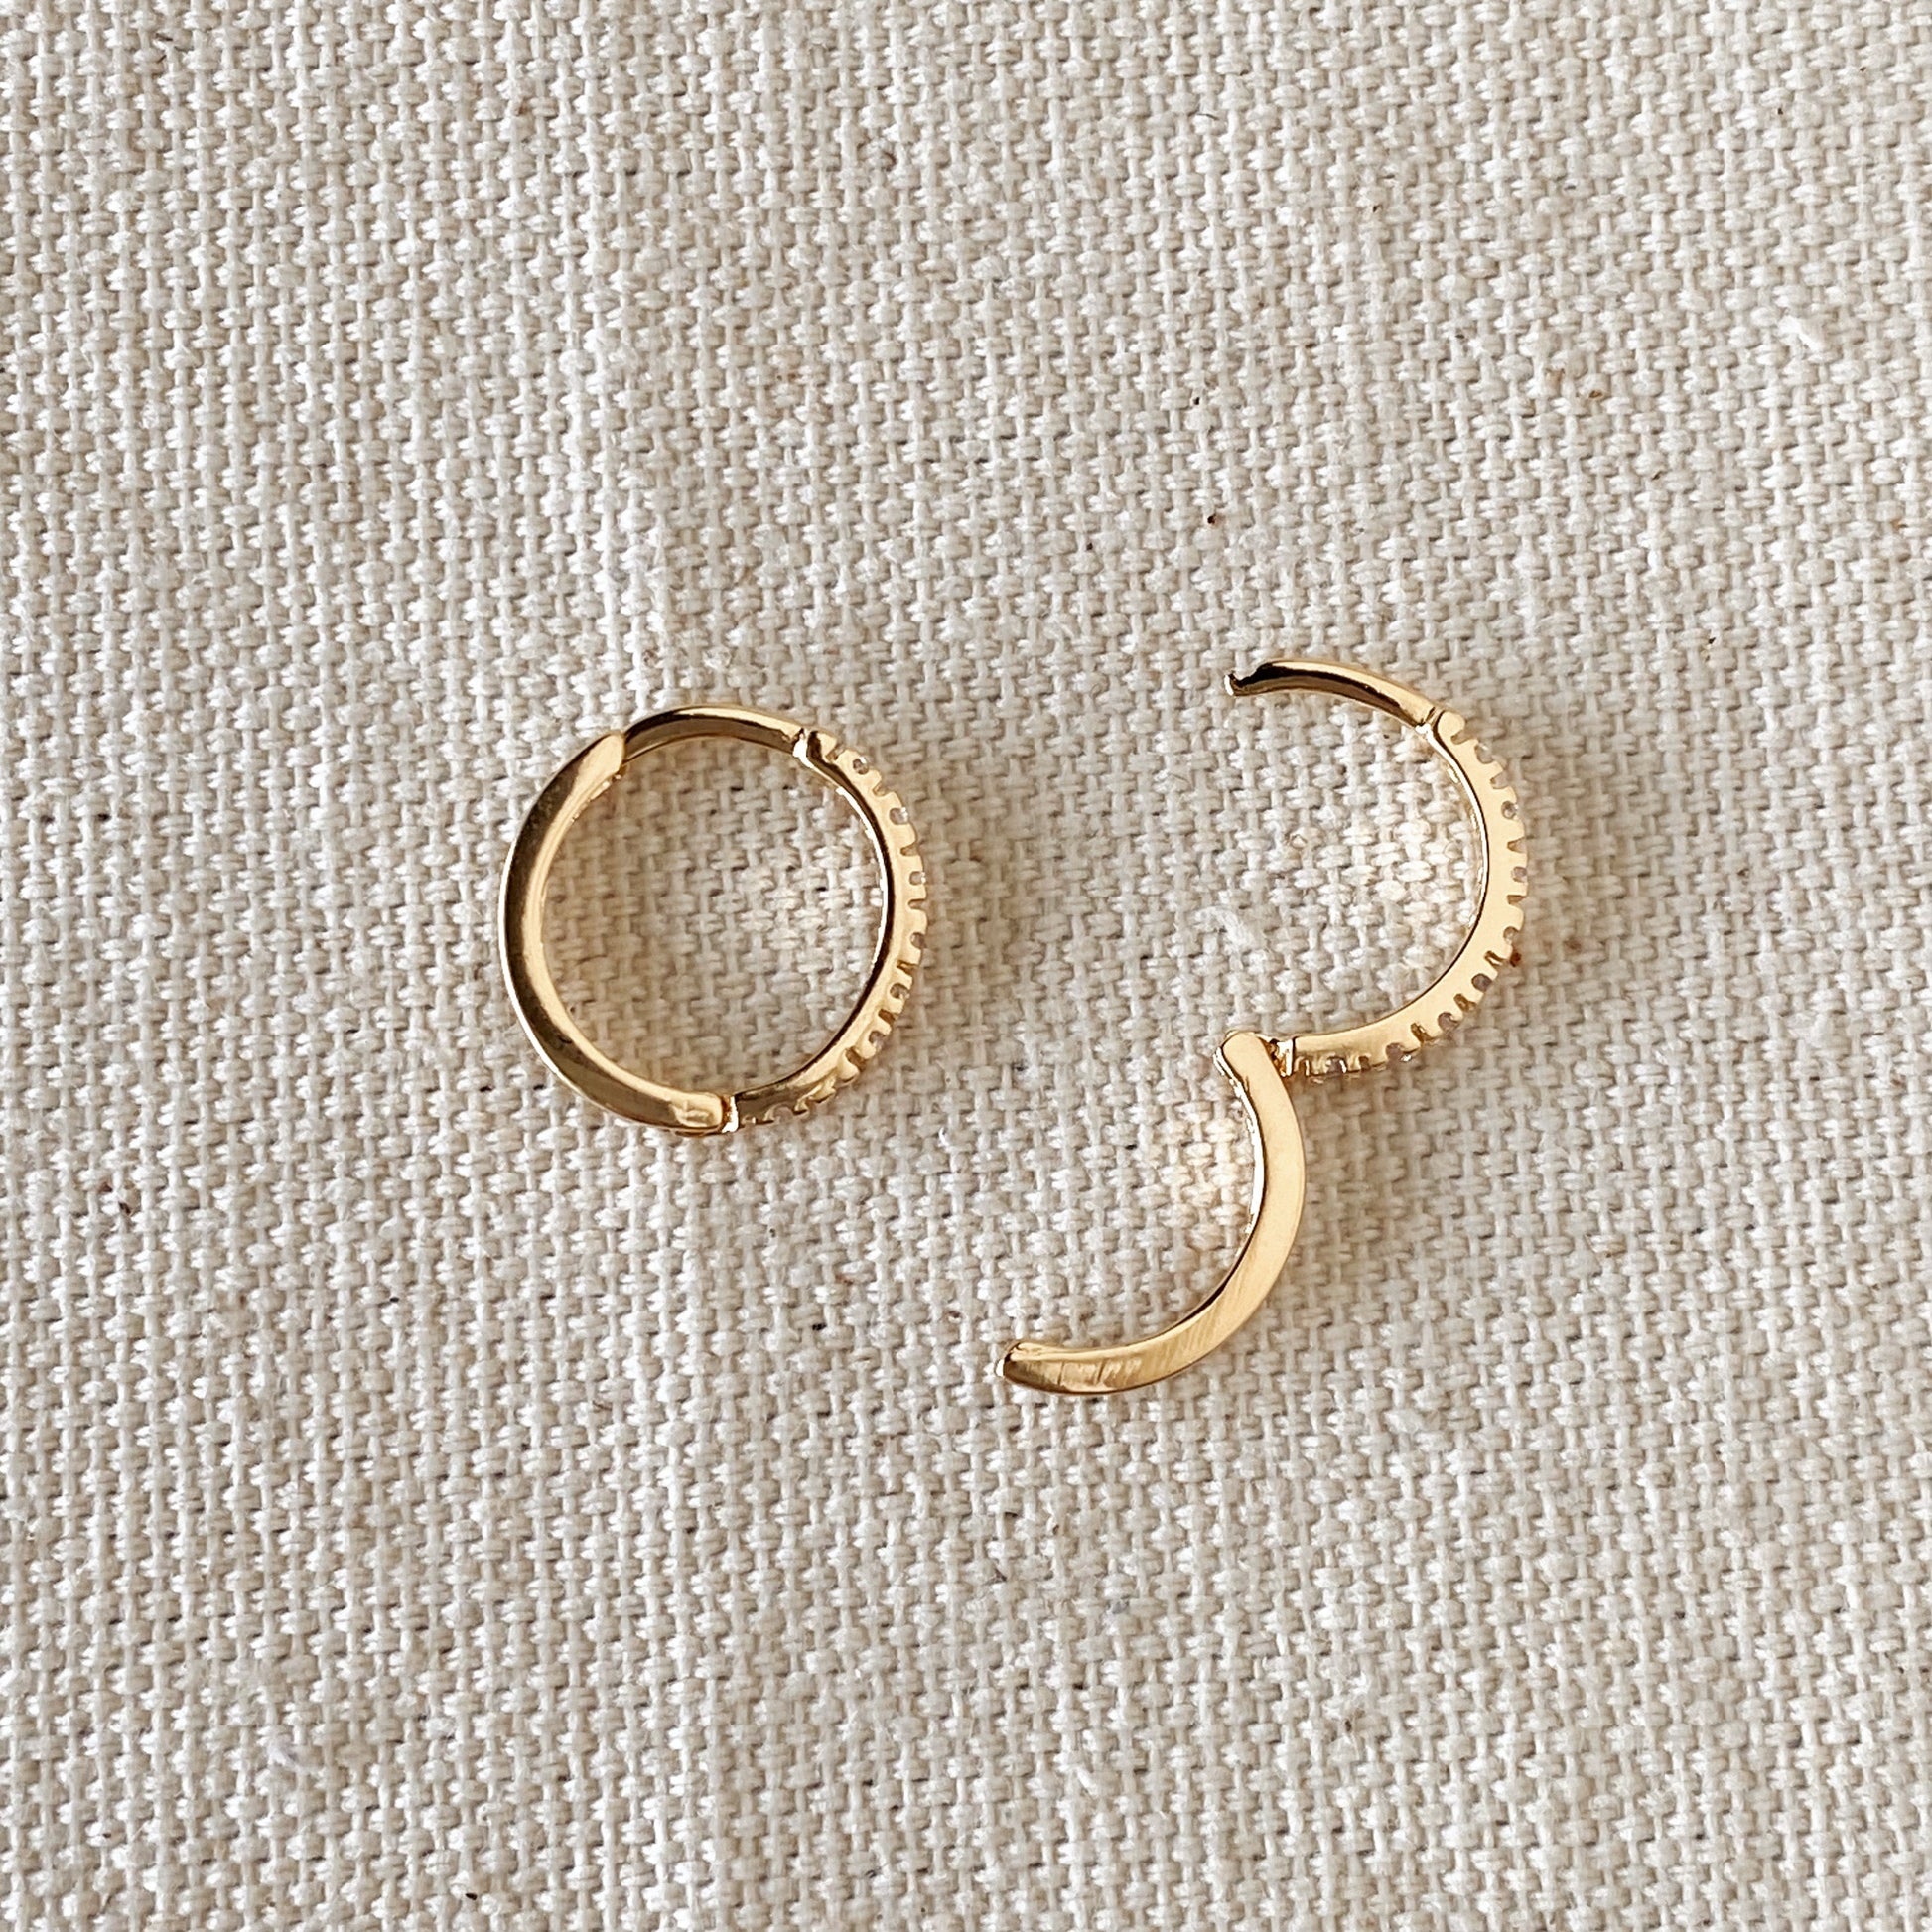 GoldFi 18k Gold Filled Thin Line Cubic Zirconia Hoop Earrings